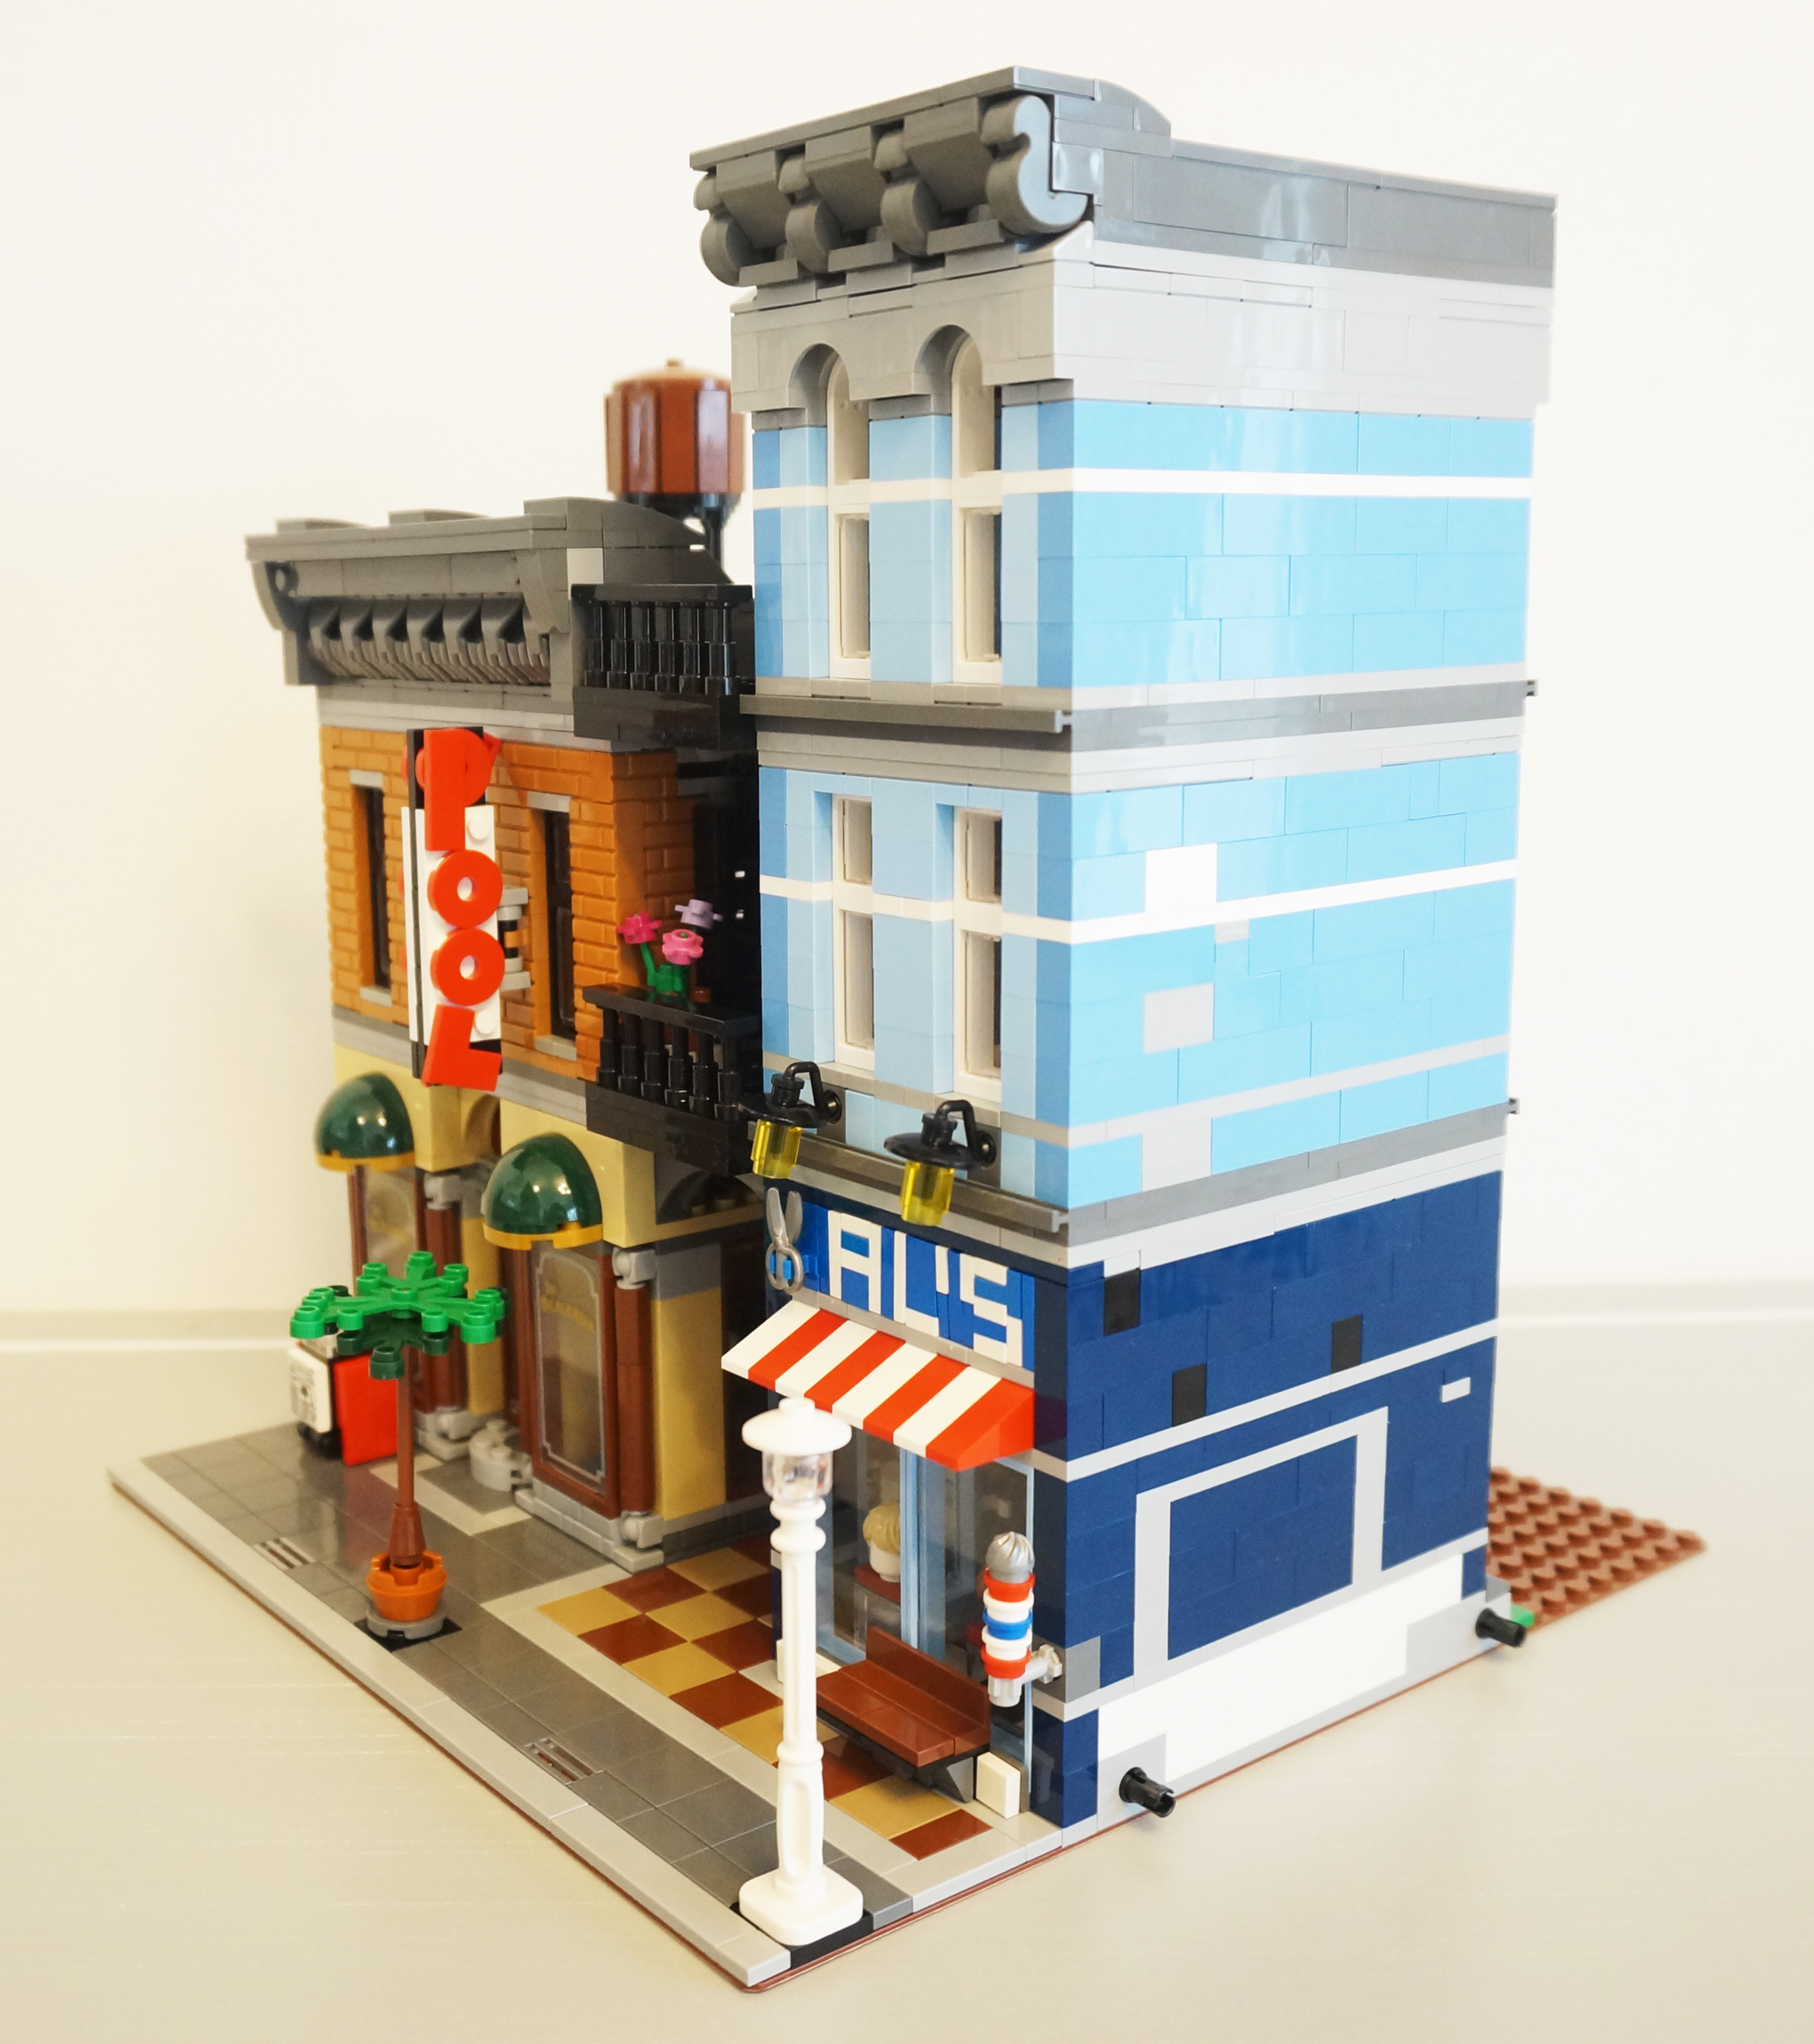 値頃おもちゃ10246探偵事務所レゴクリエイターエキスパート完成レビュー - レゴがすき